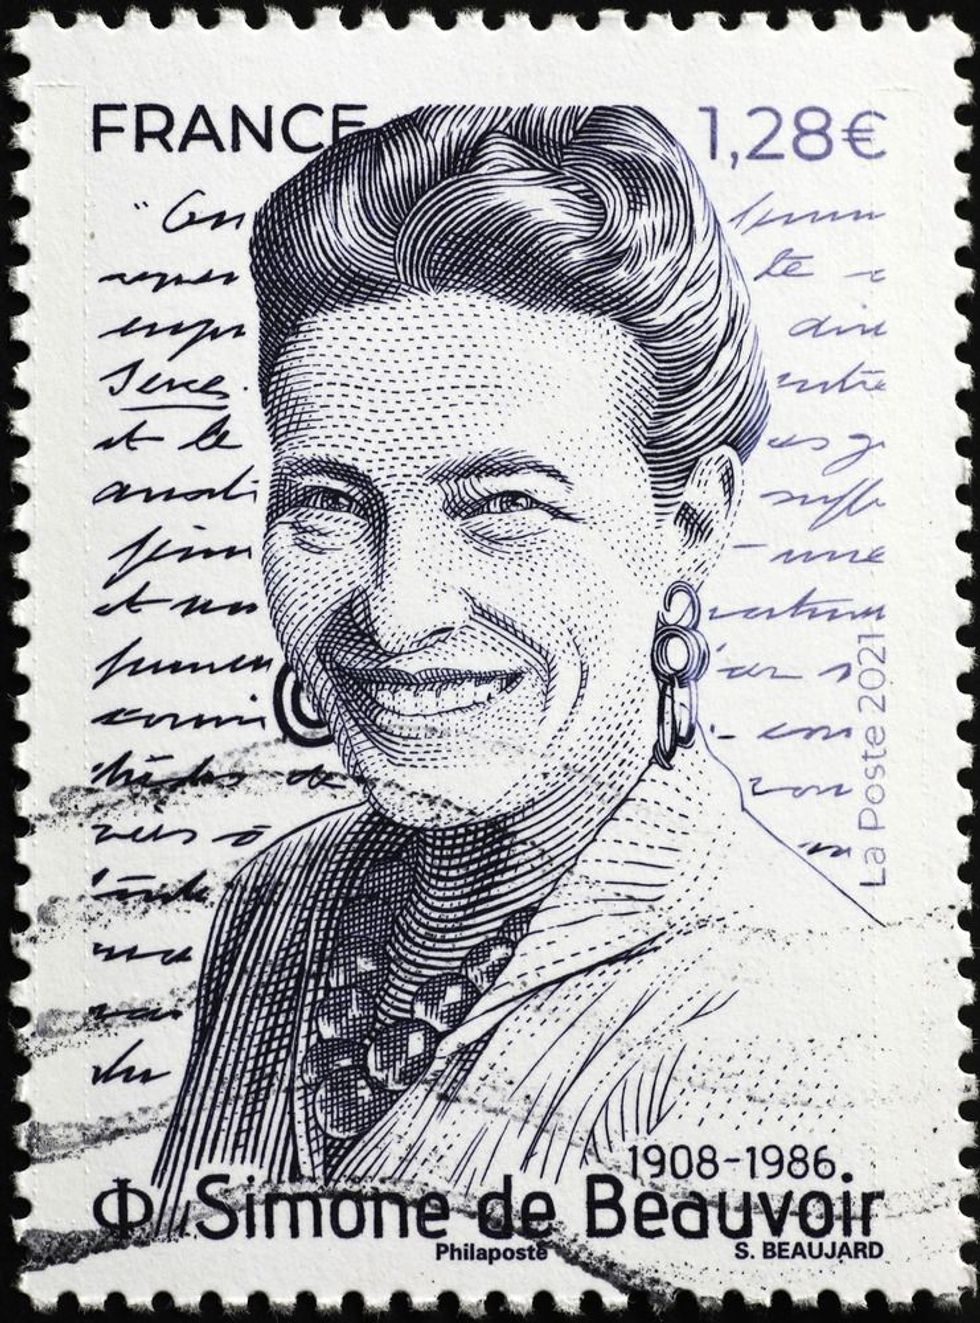 Simone de Beauvoir portrait on postage stamp